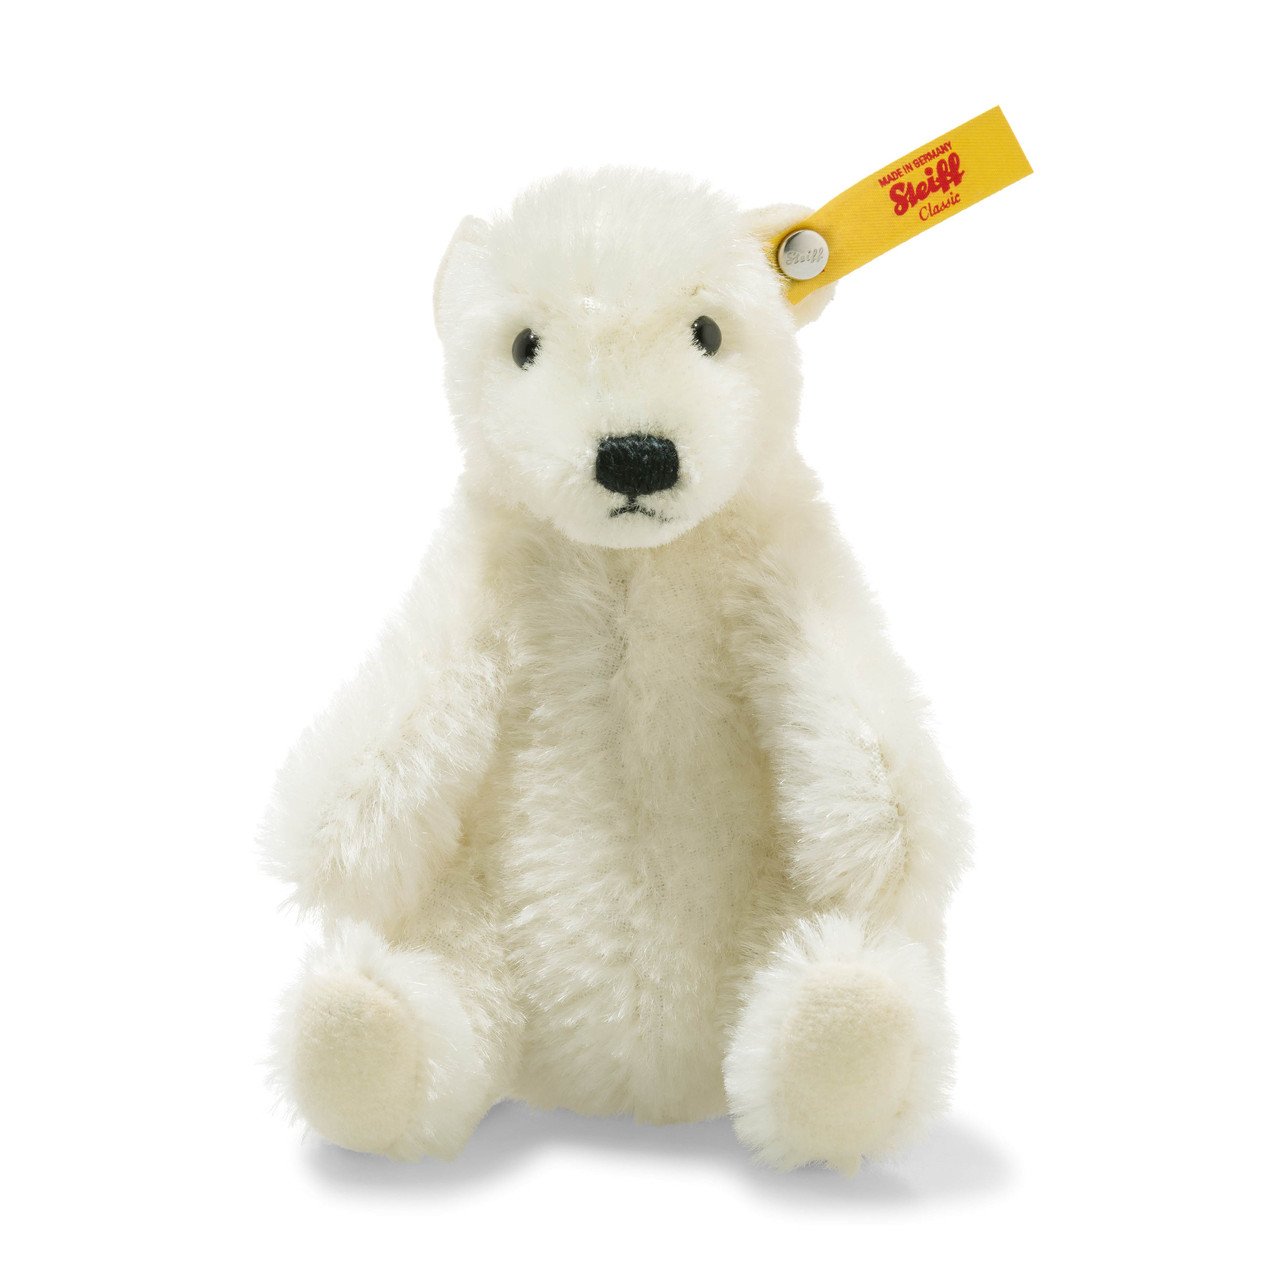 polar bear stuffed animal bulk